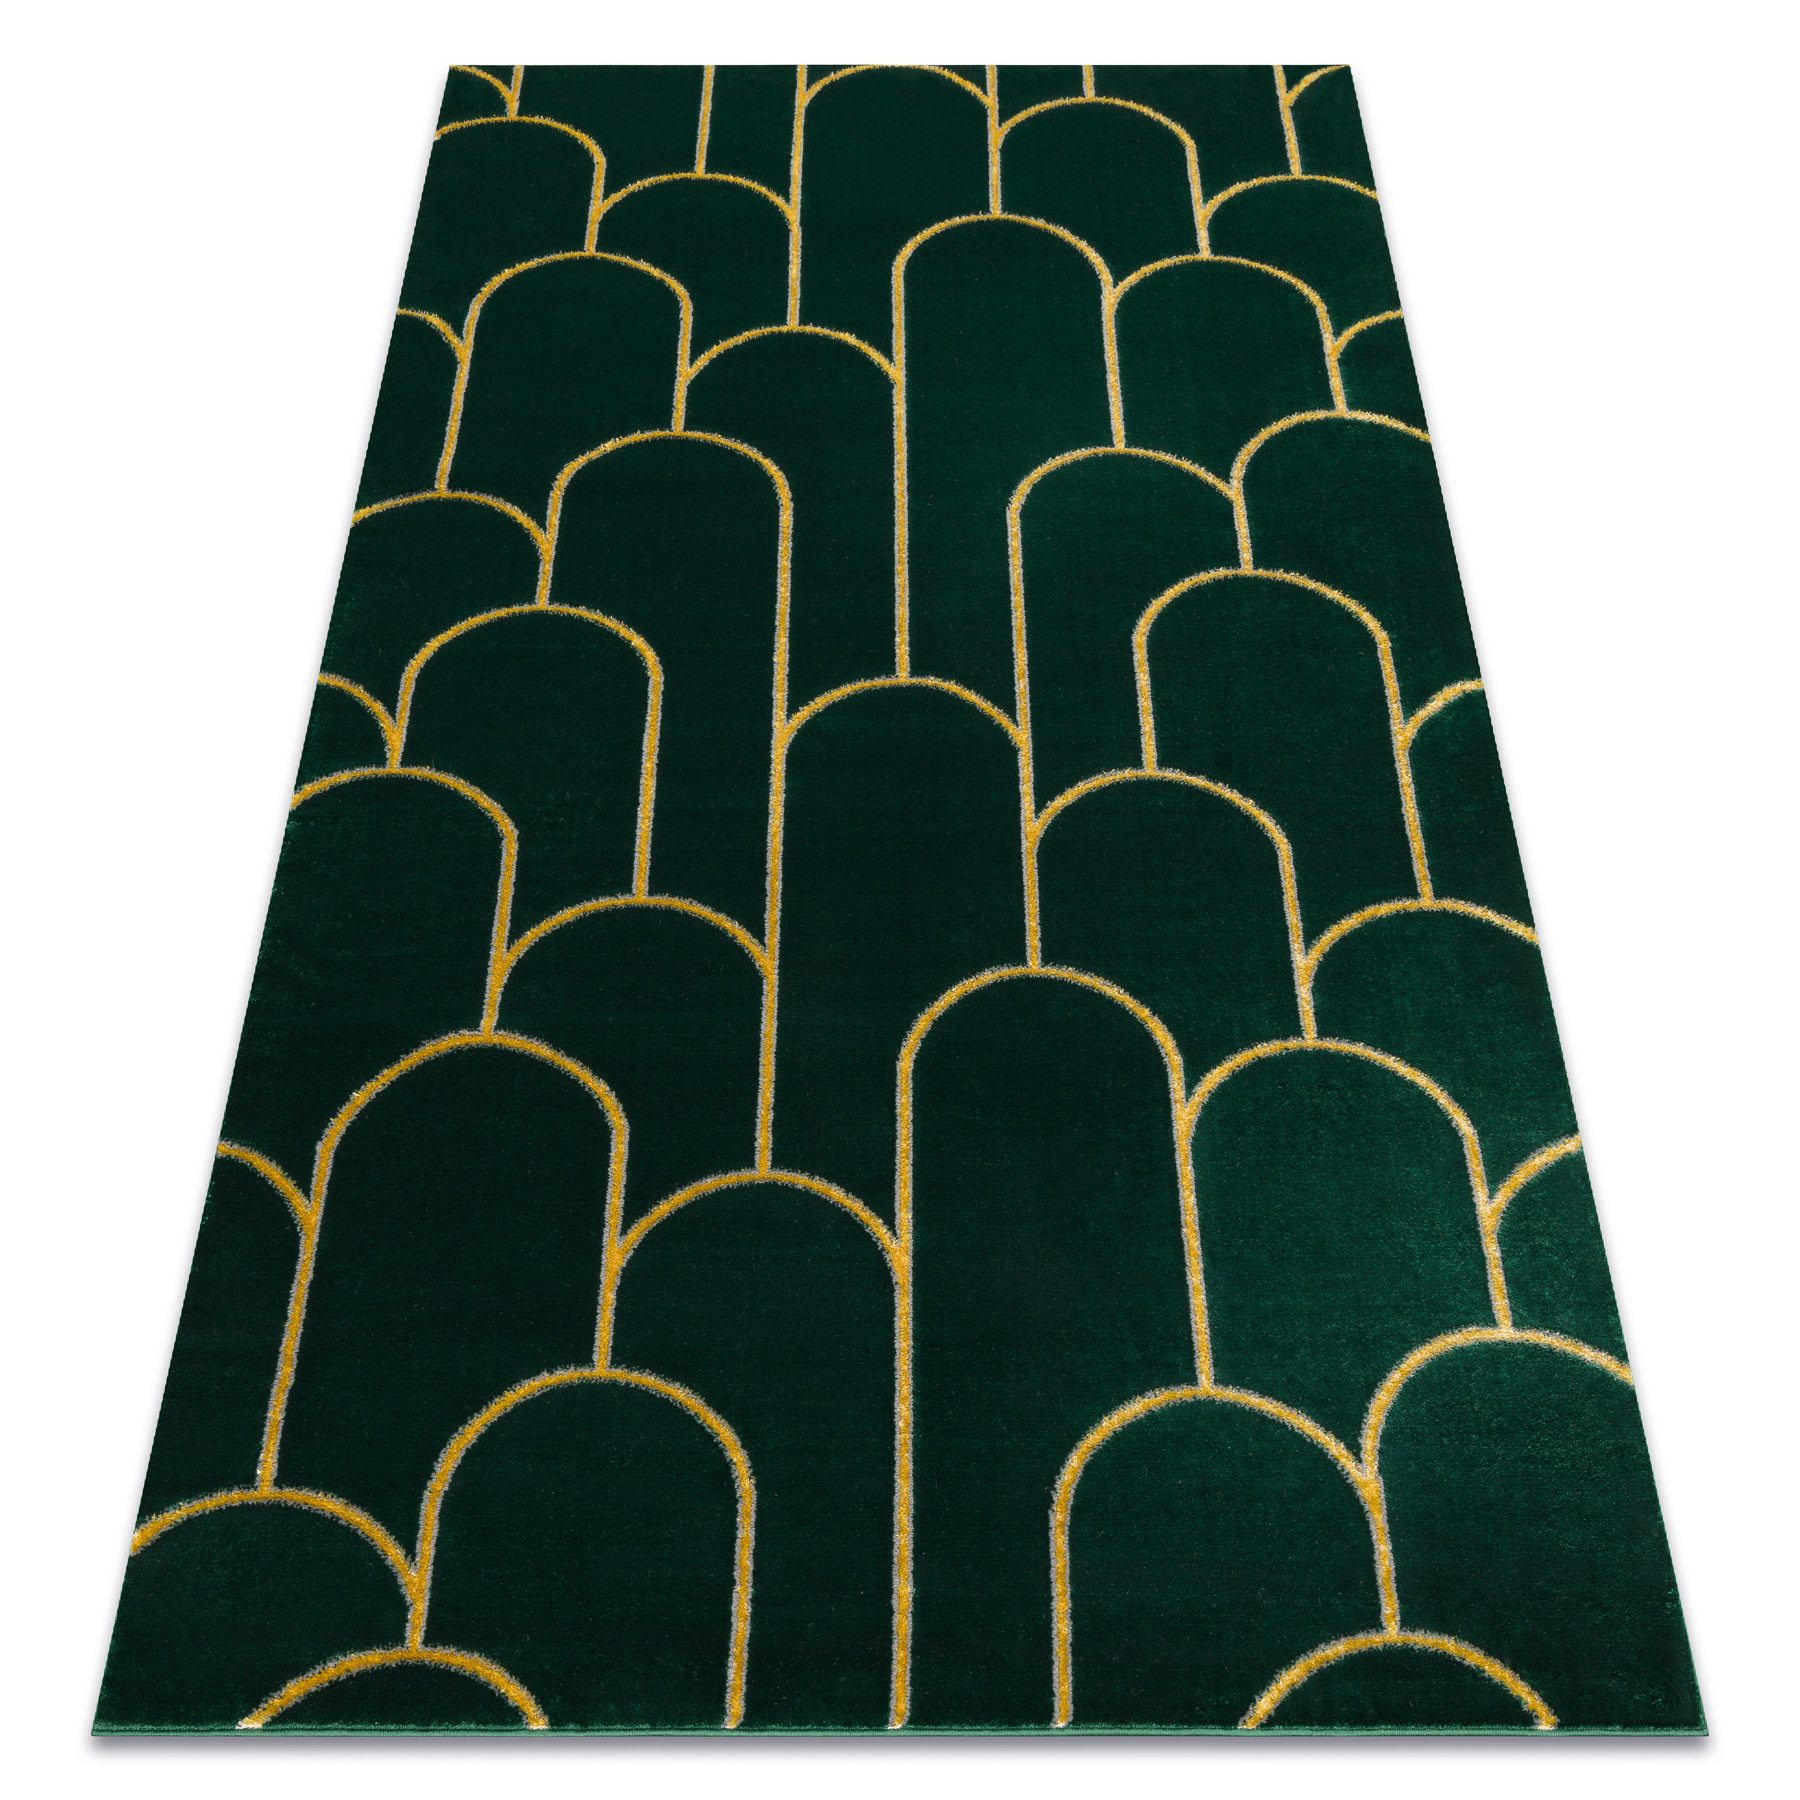 Tapijt EMERALD exclusief 1021 stijlvol art deco, fles groen / Moderne tapijten